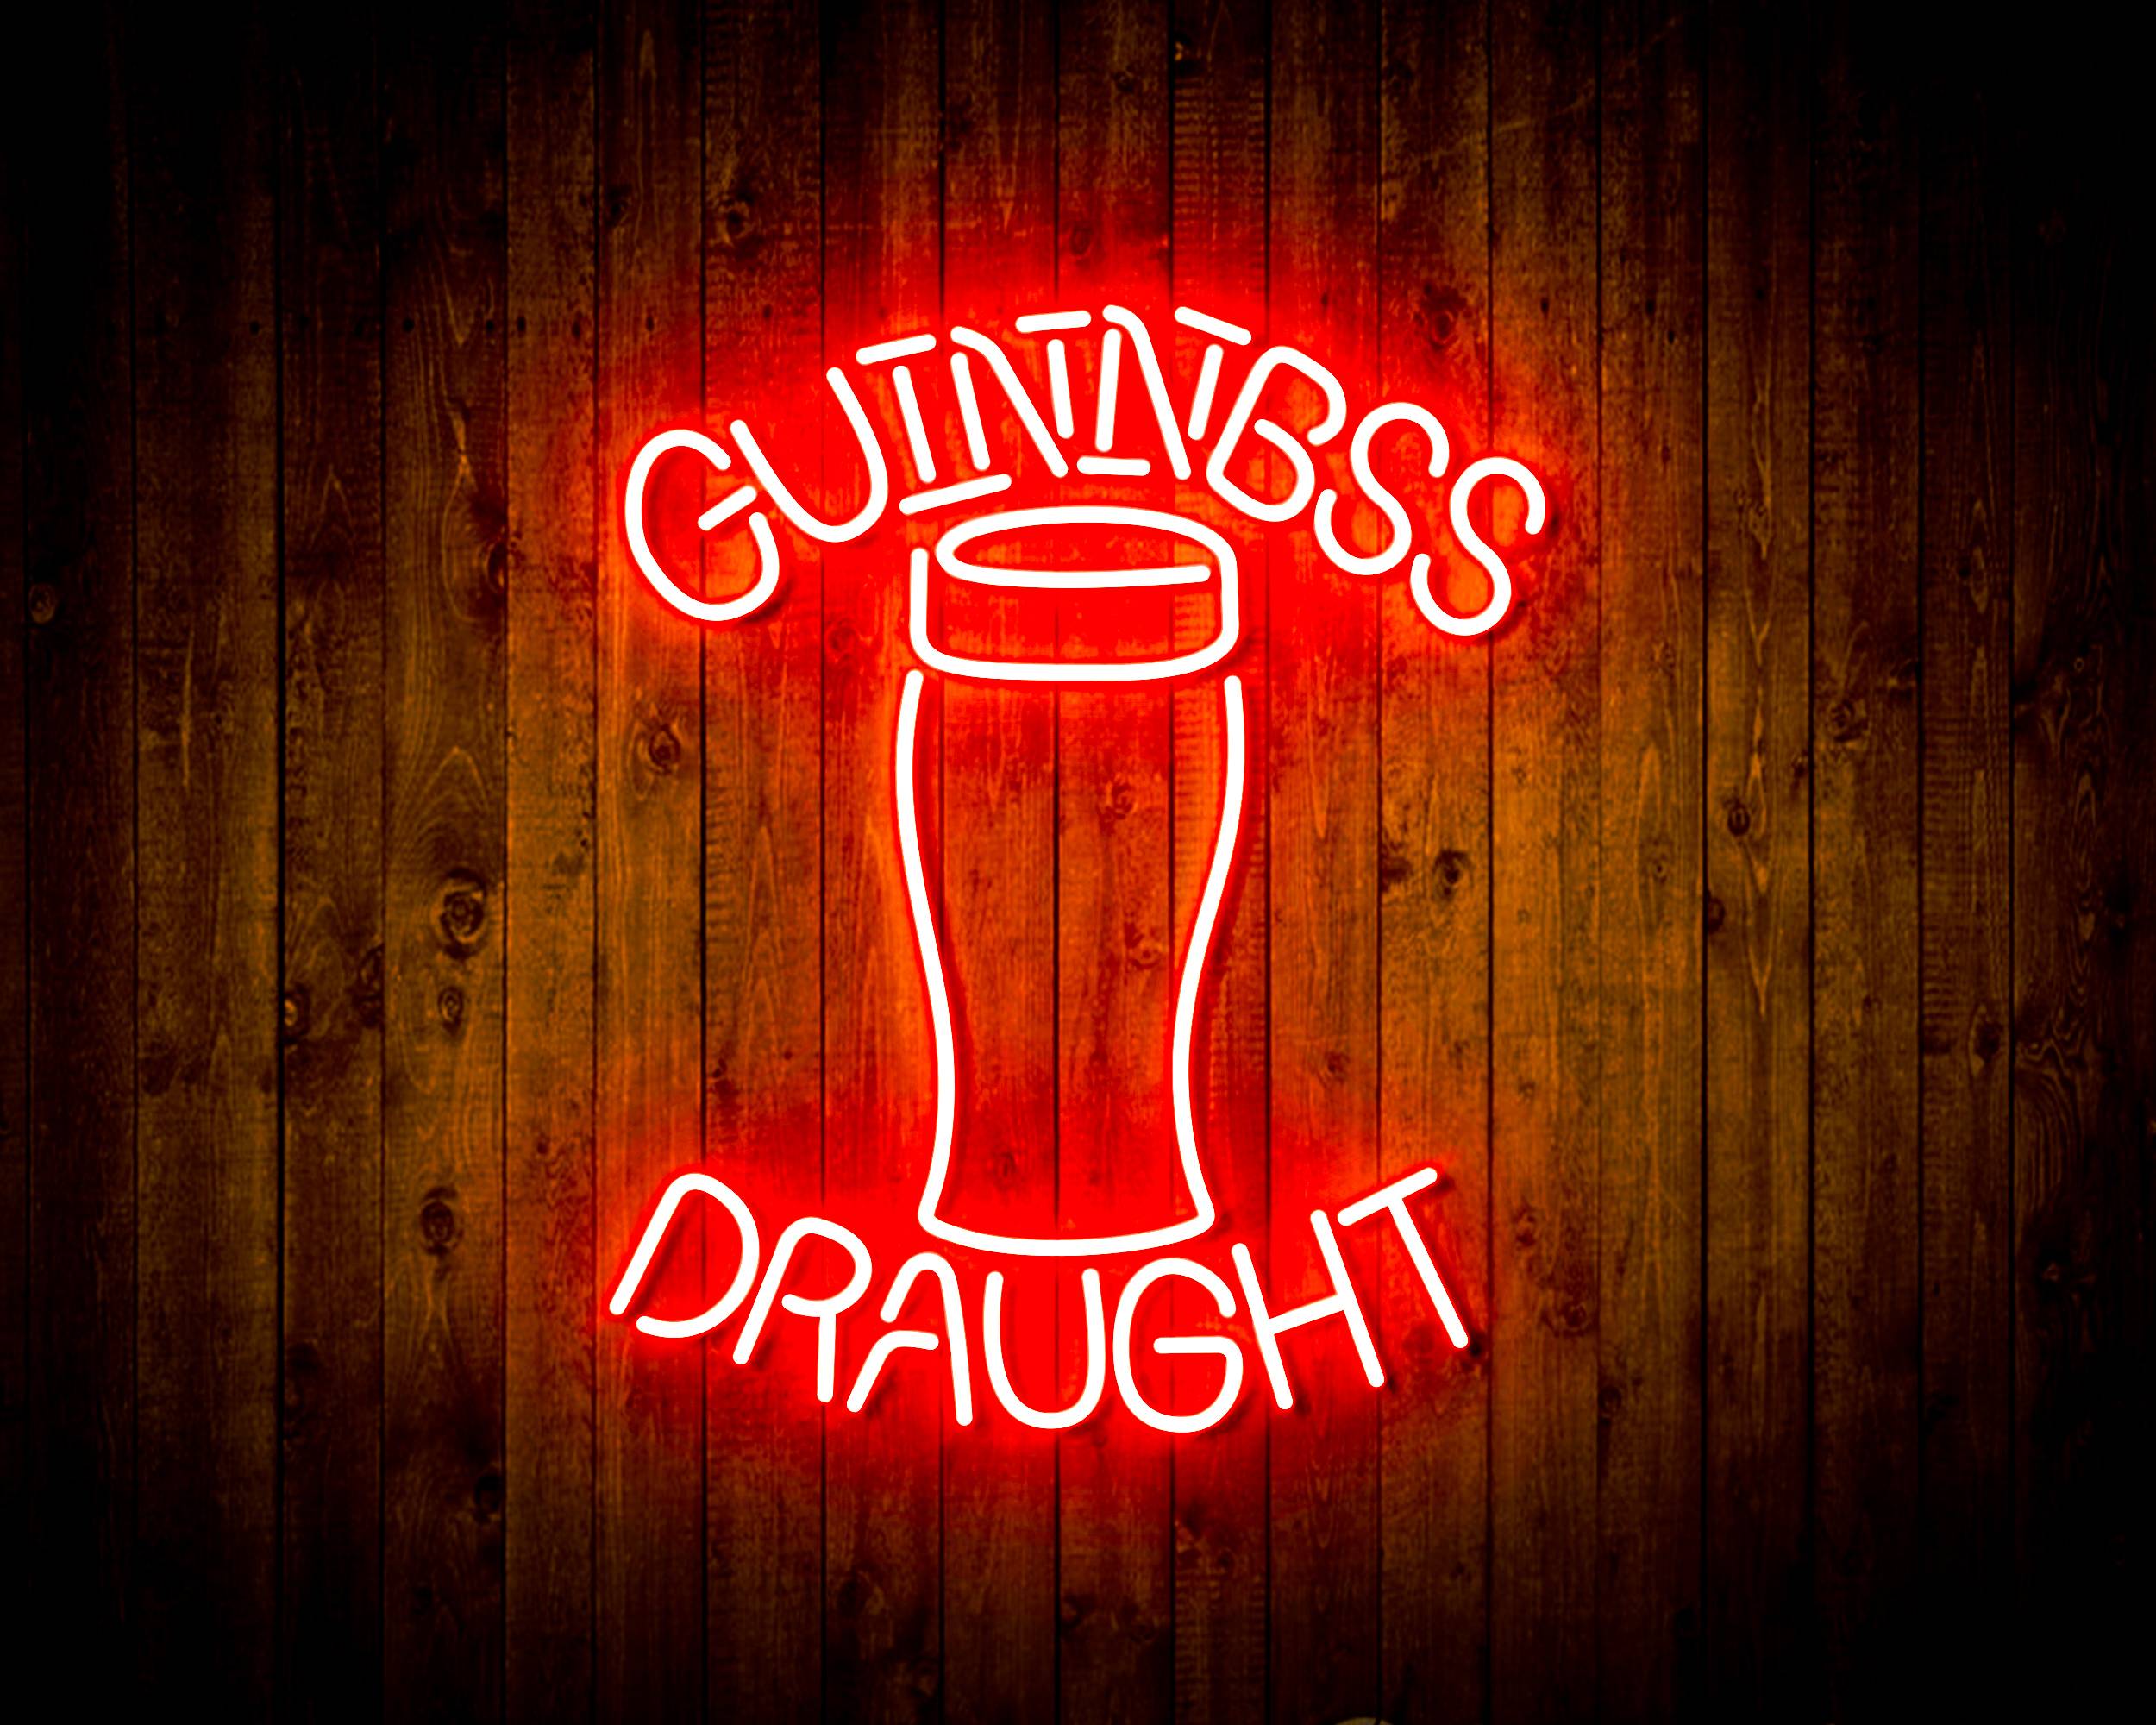 Guinness Draught Handmade LED Neon Light Sign